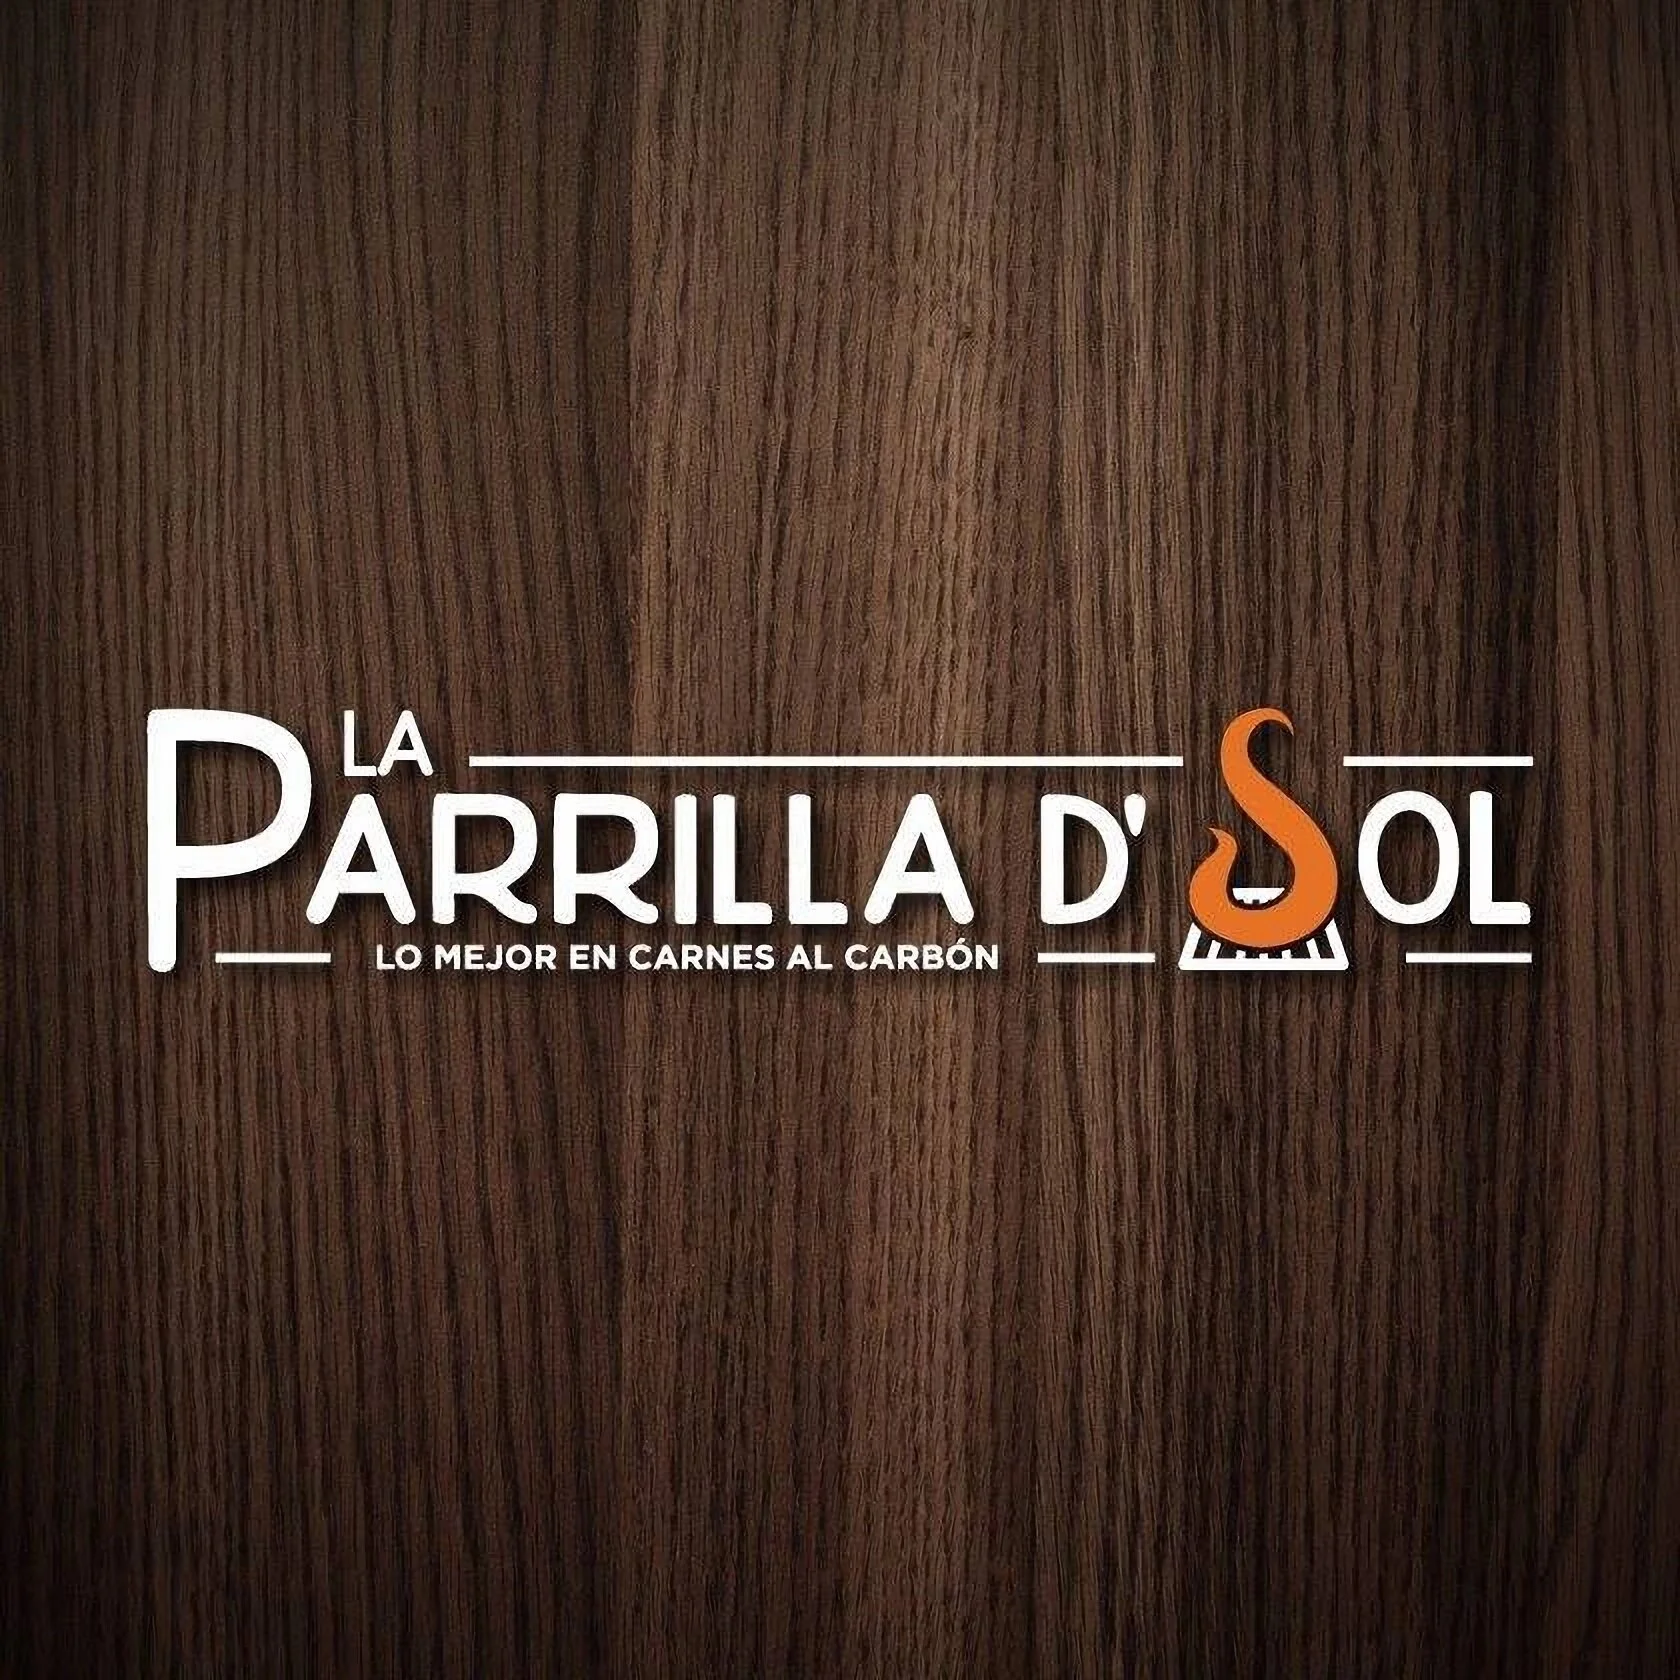 Restaurantes-la-parrilla-del-sol-17152